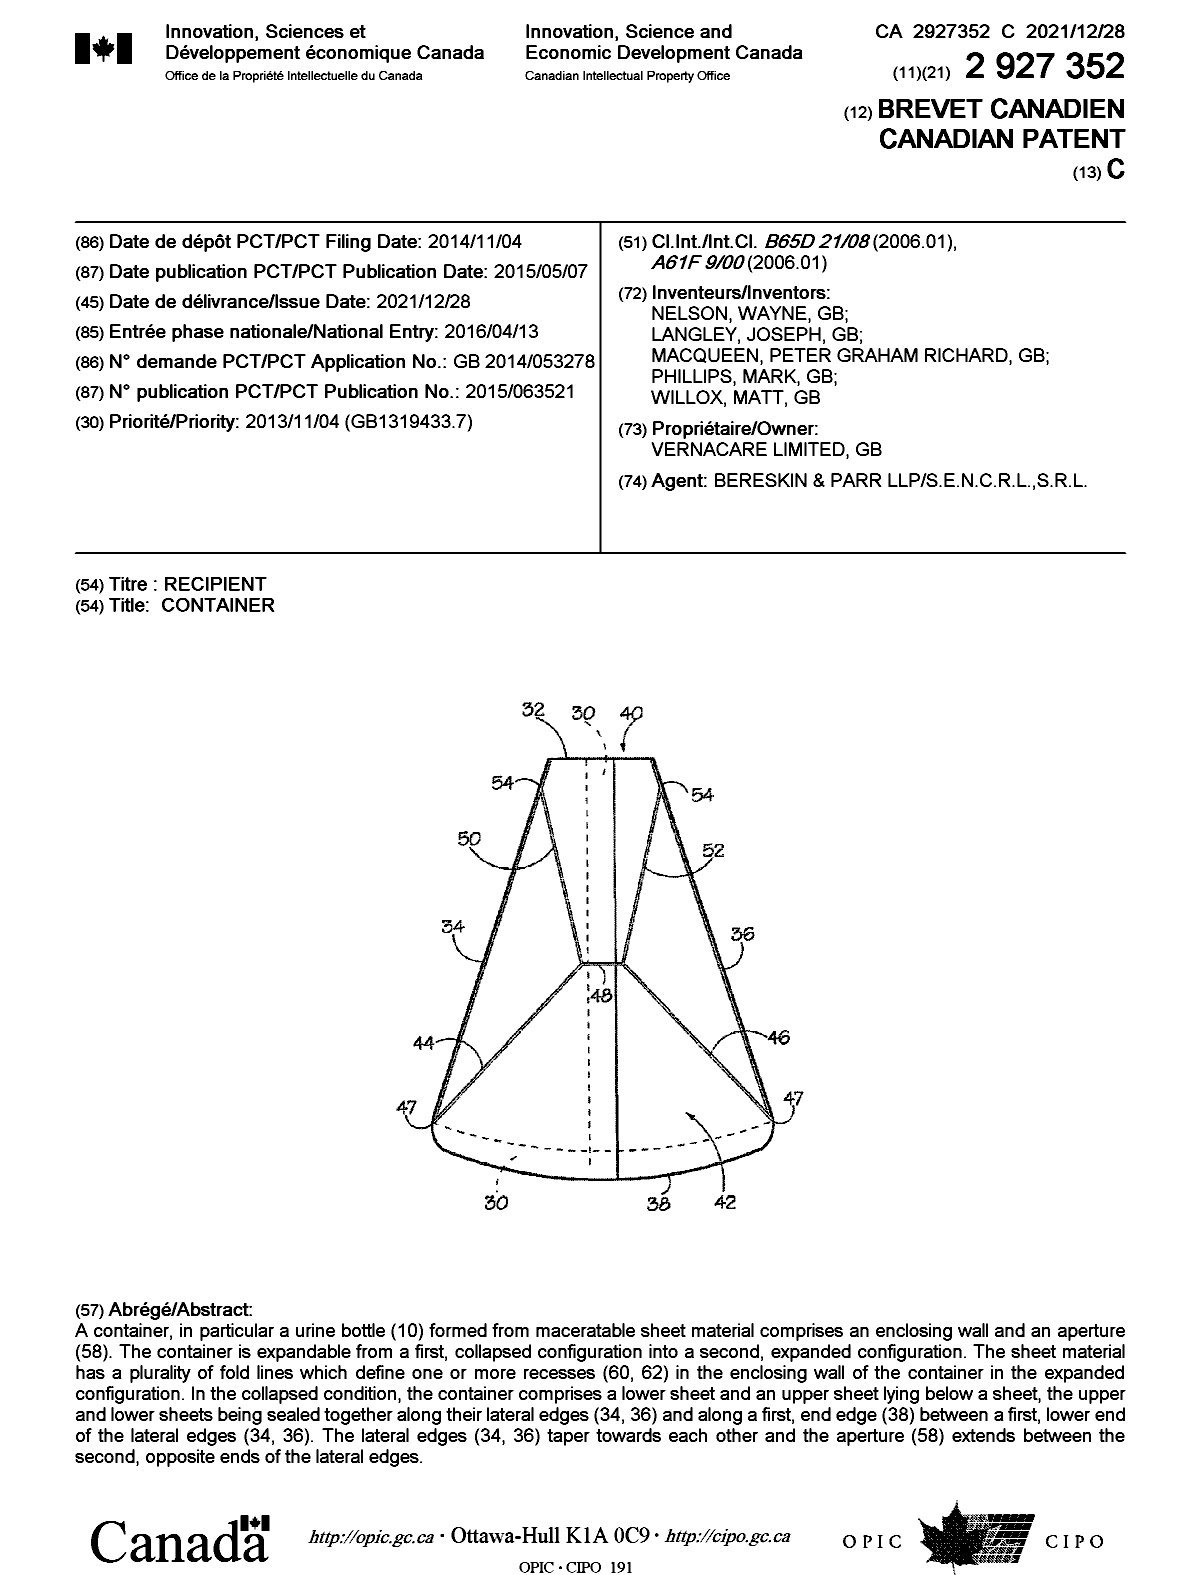 Document de brevet canadien 2927352. Page couverture 20211126. Image 1 de 1